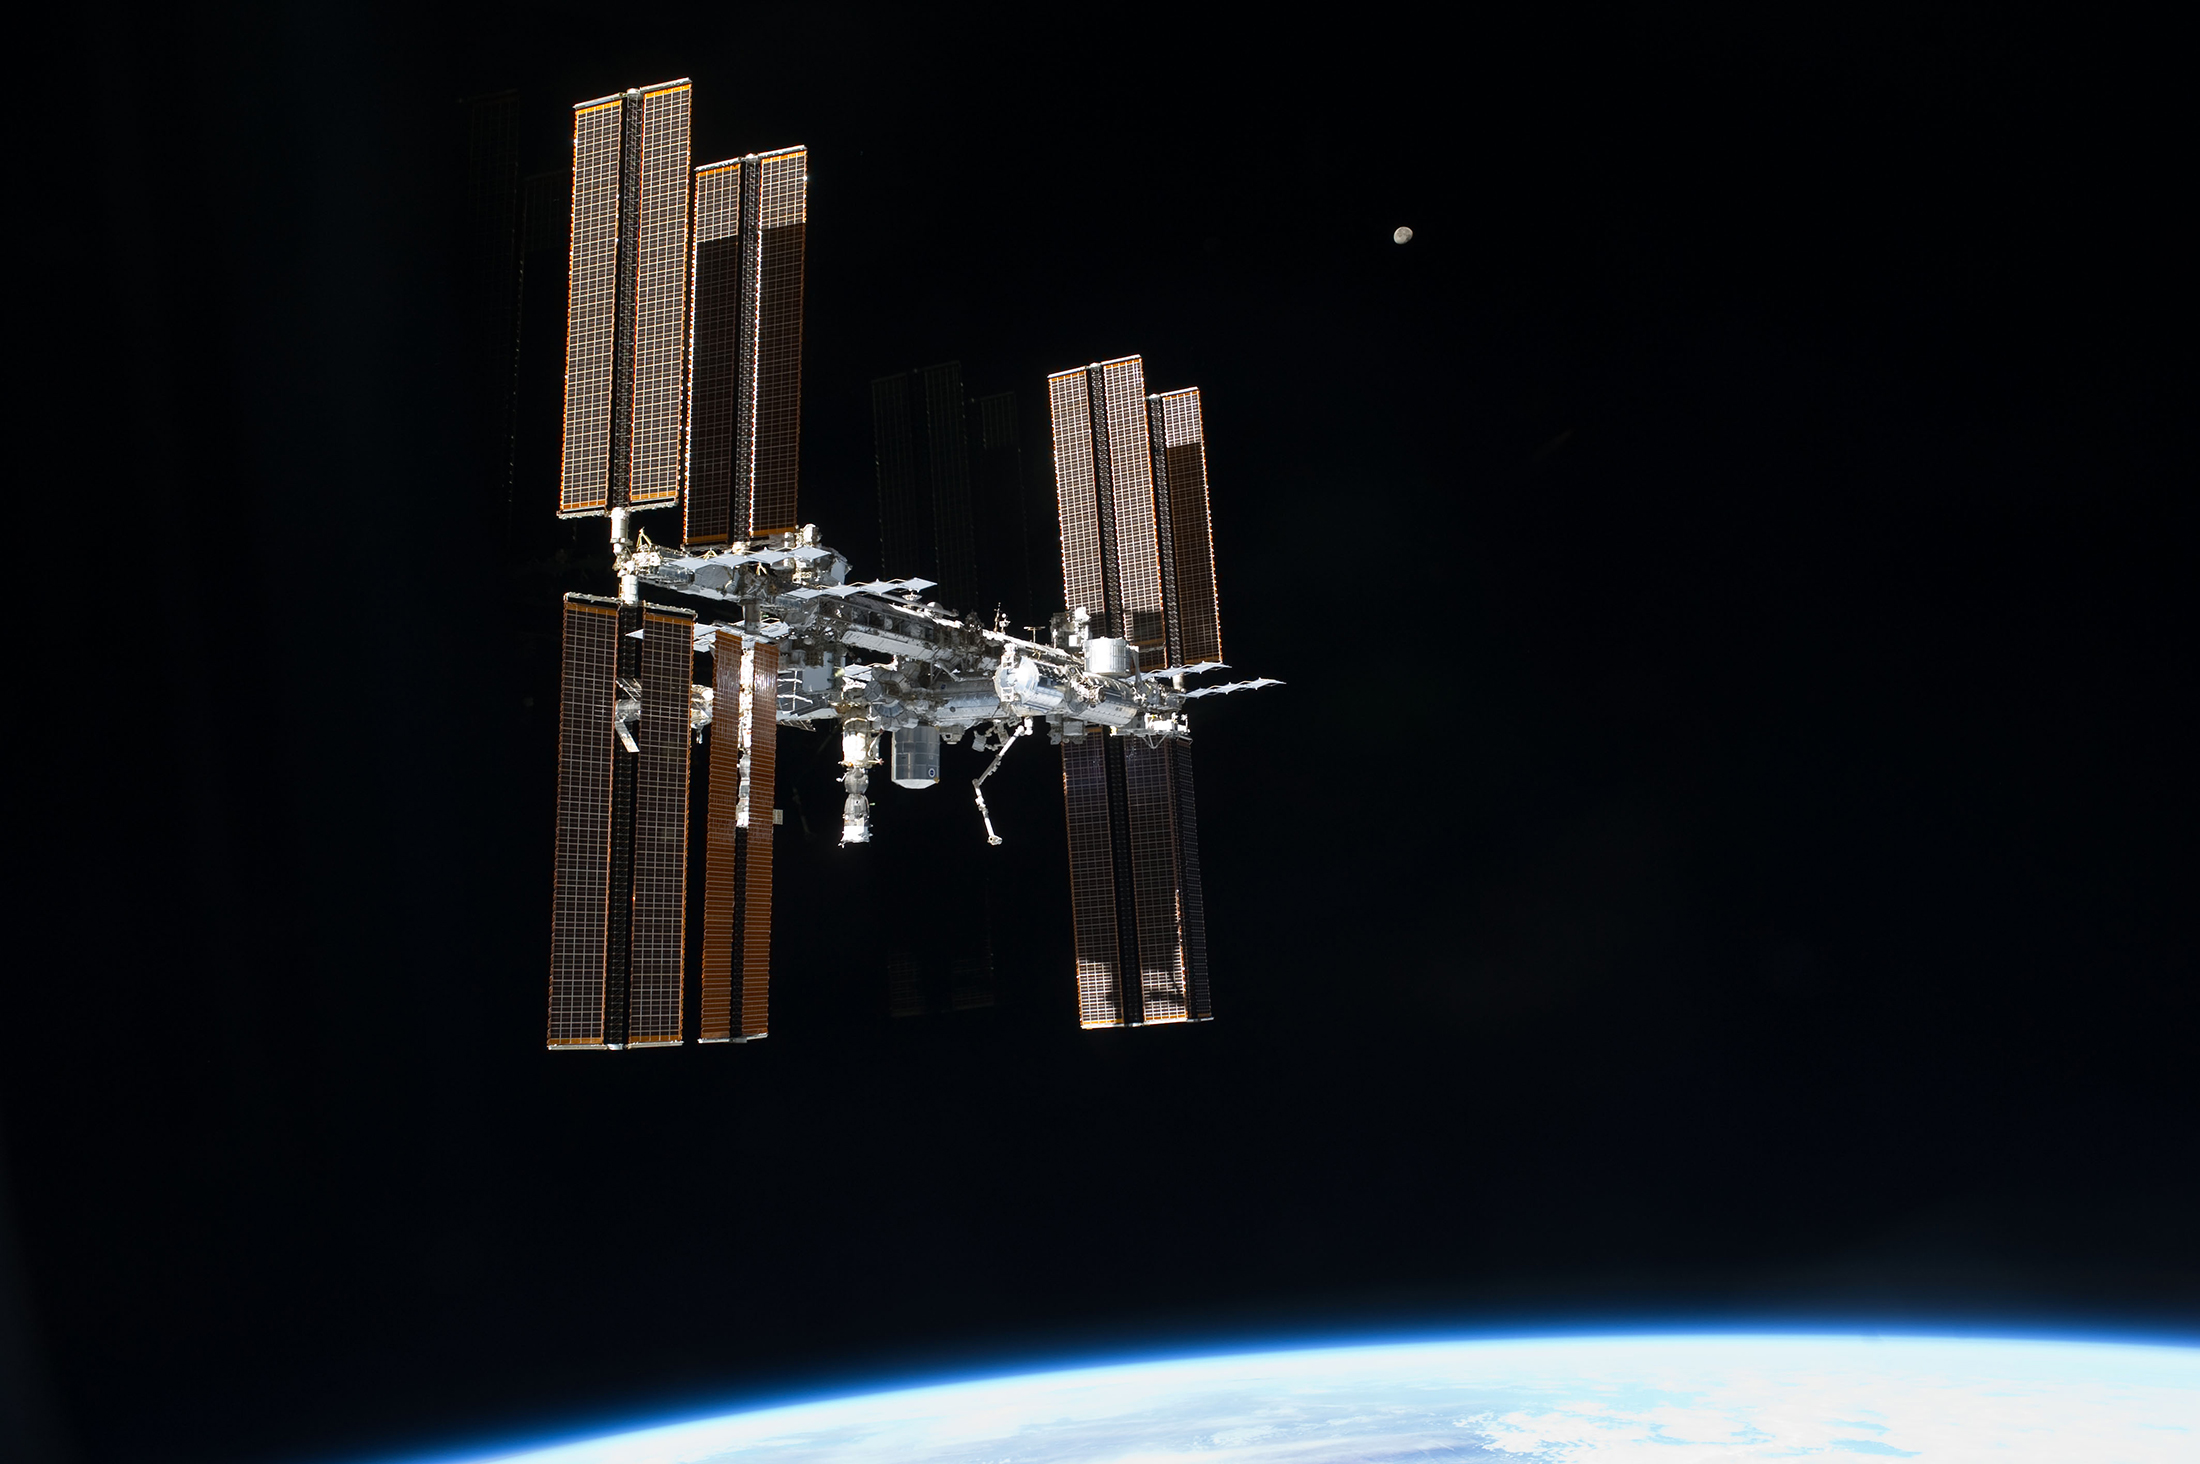 La Station spatiale internationale photographiée en juillet 2011 depuis la navette spatiale lors de sa dernière mission (STS-135). © Nasa